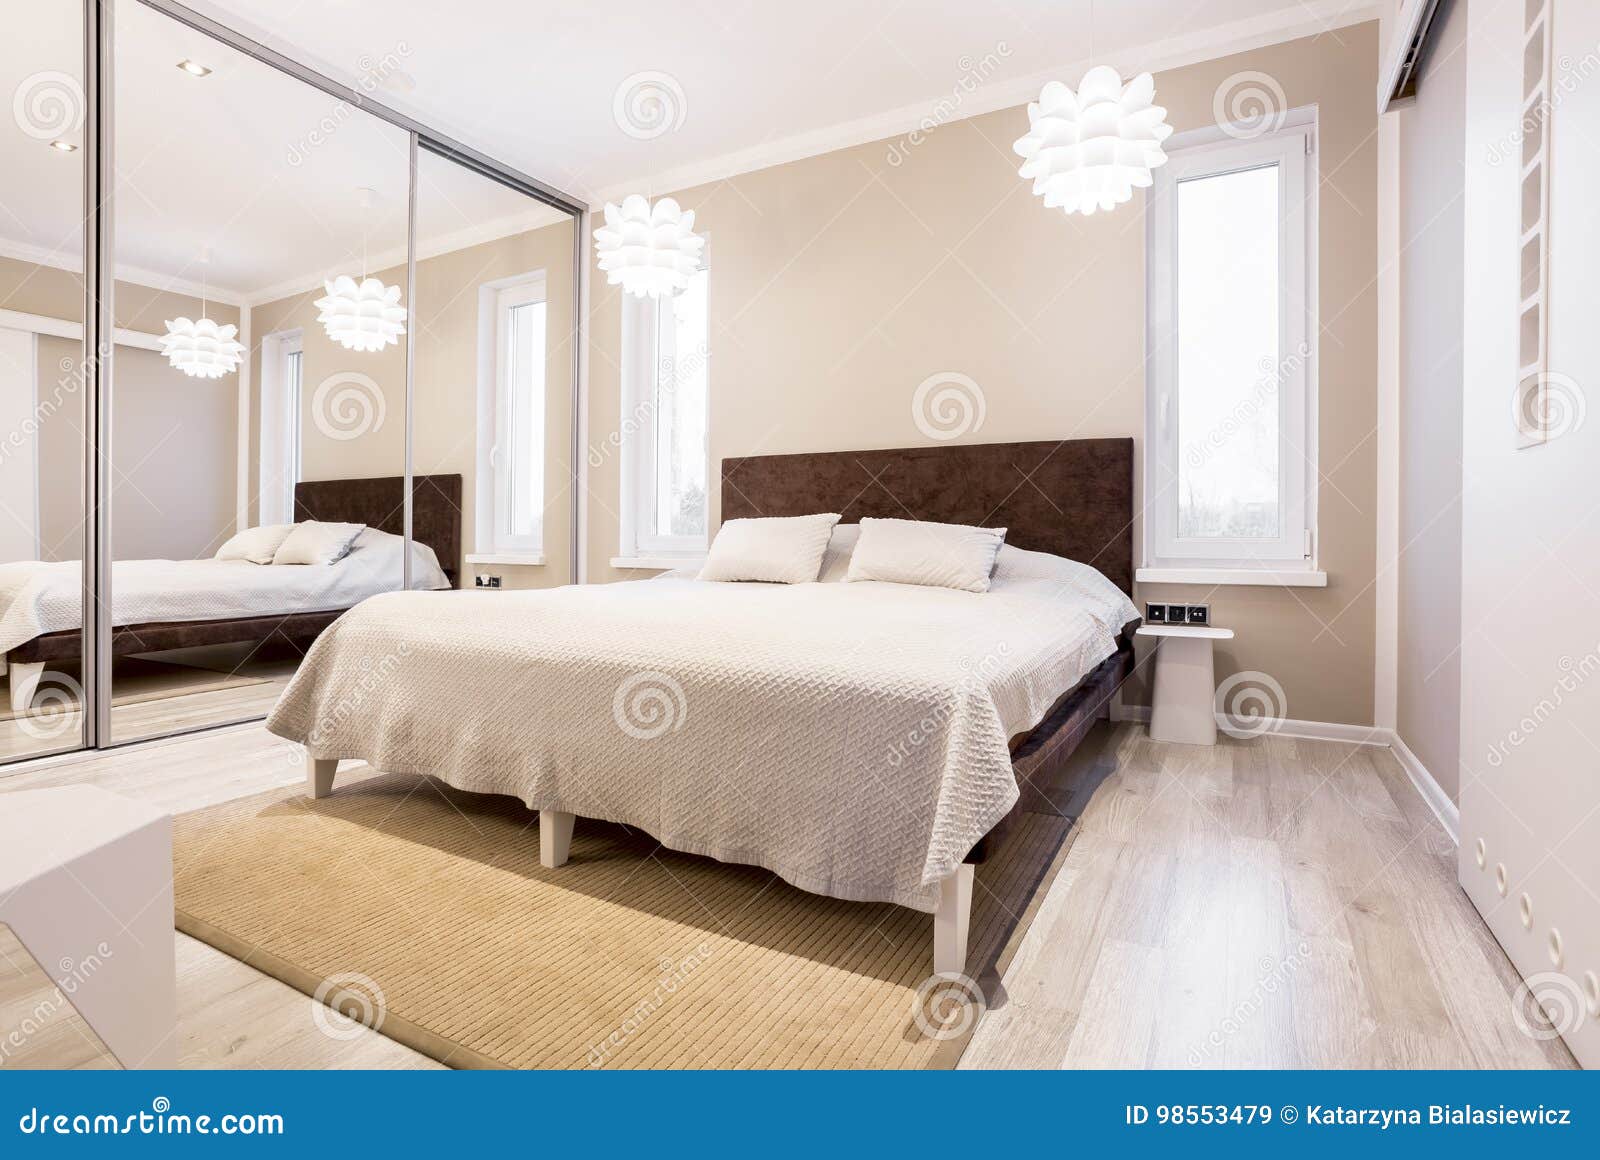 beige bedroom with mirror wardrobe